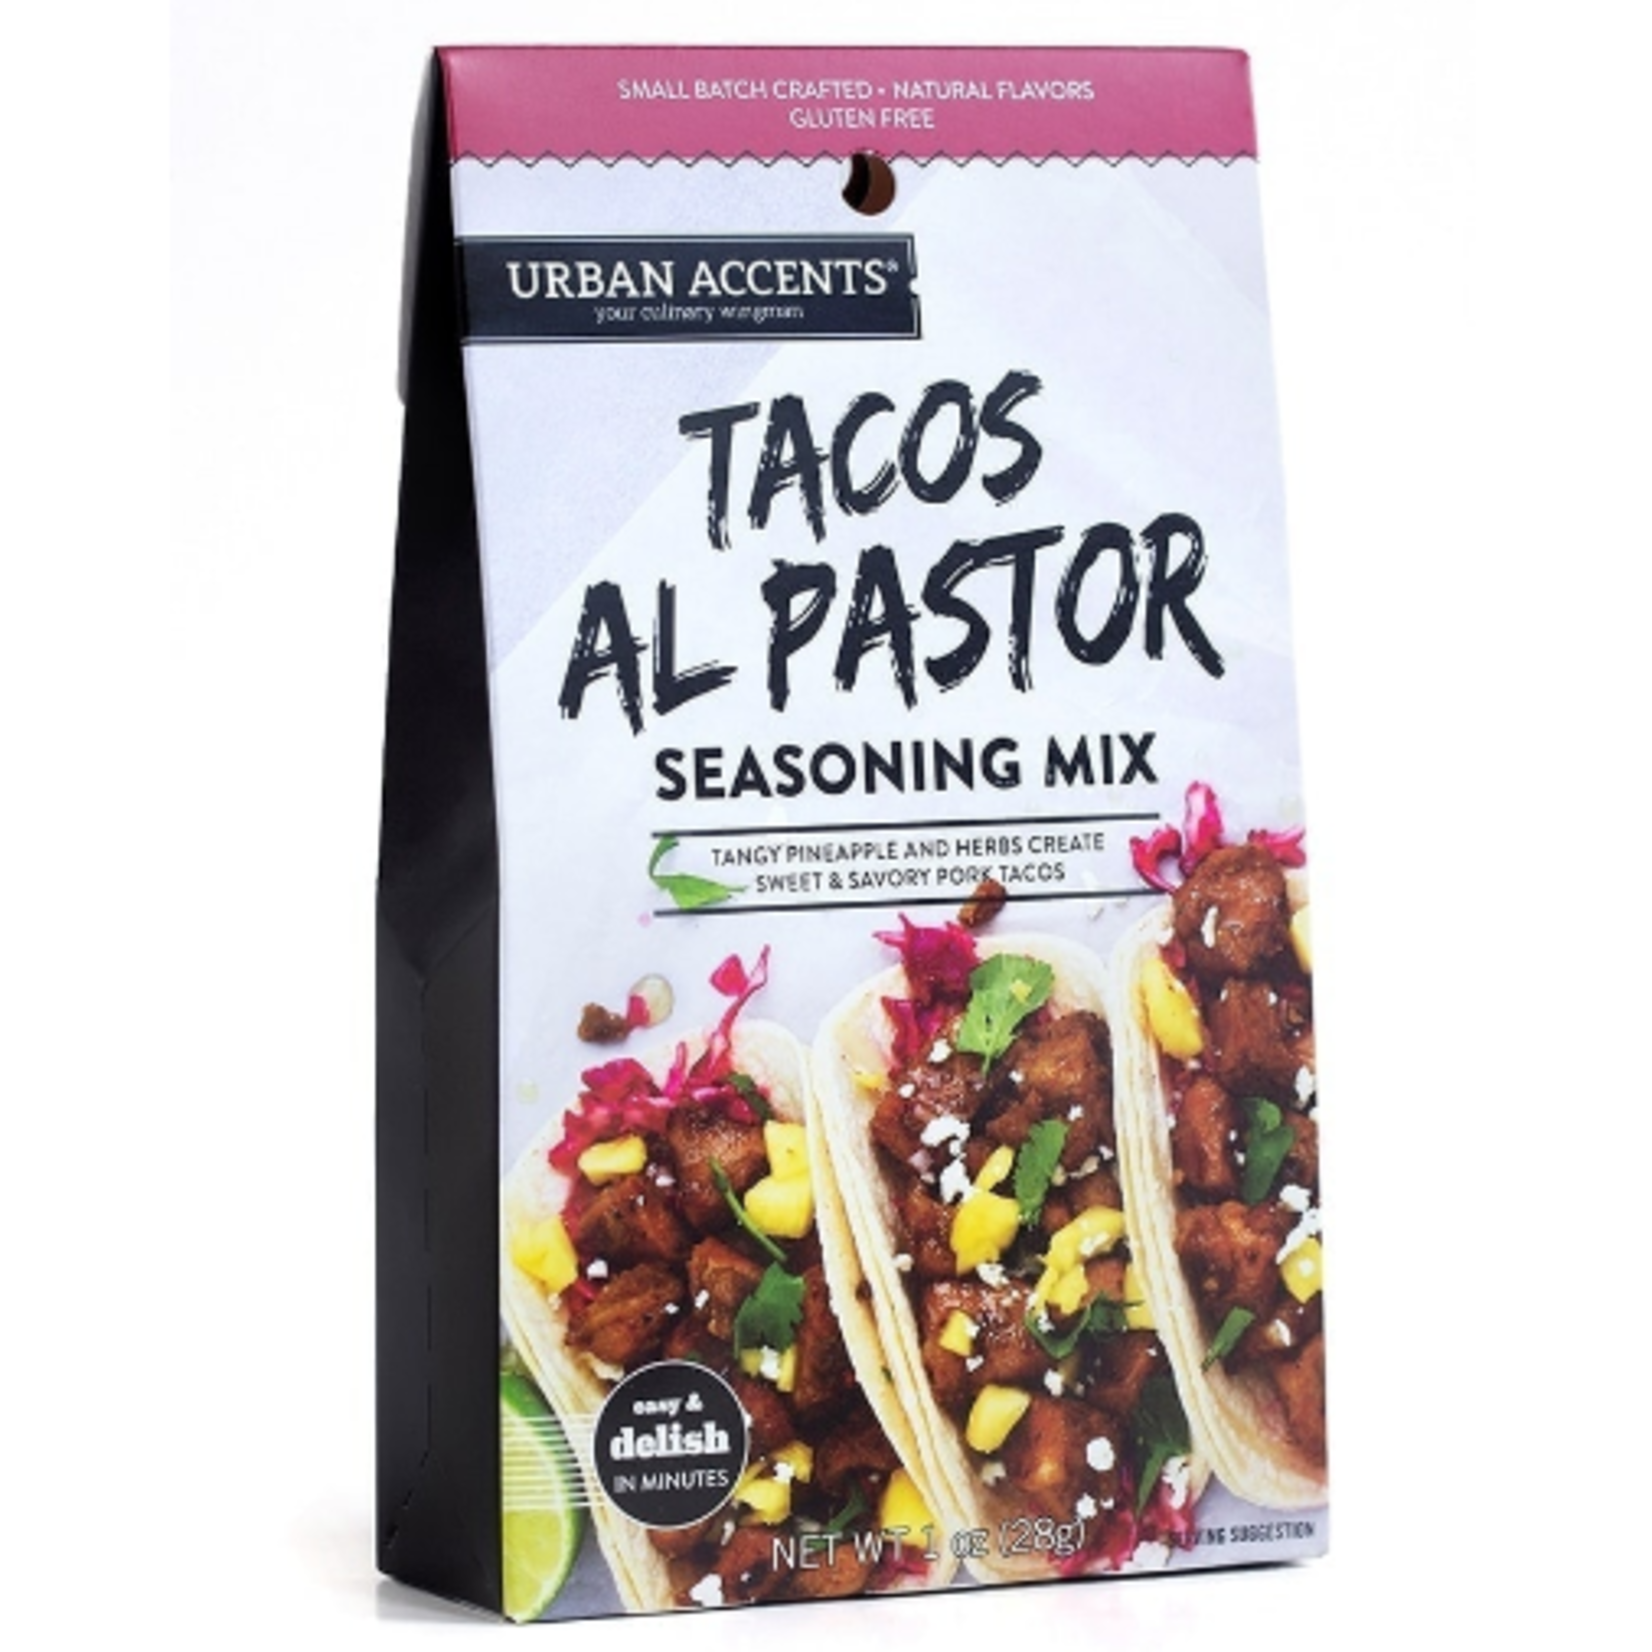 Urban Accents Tacos Al Pastor Seasoning